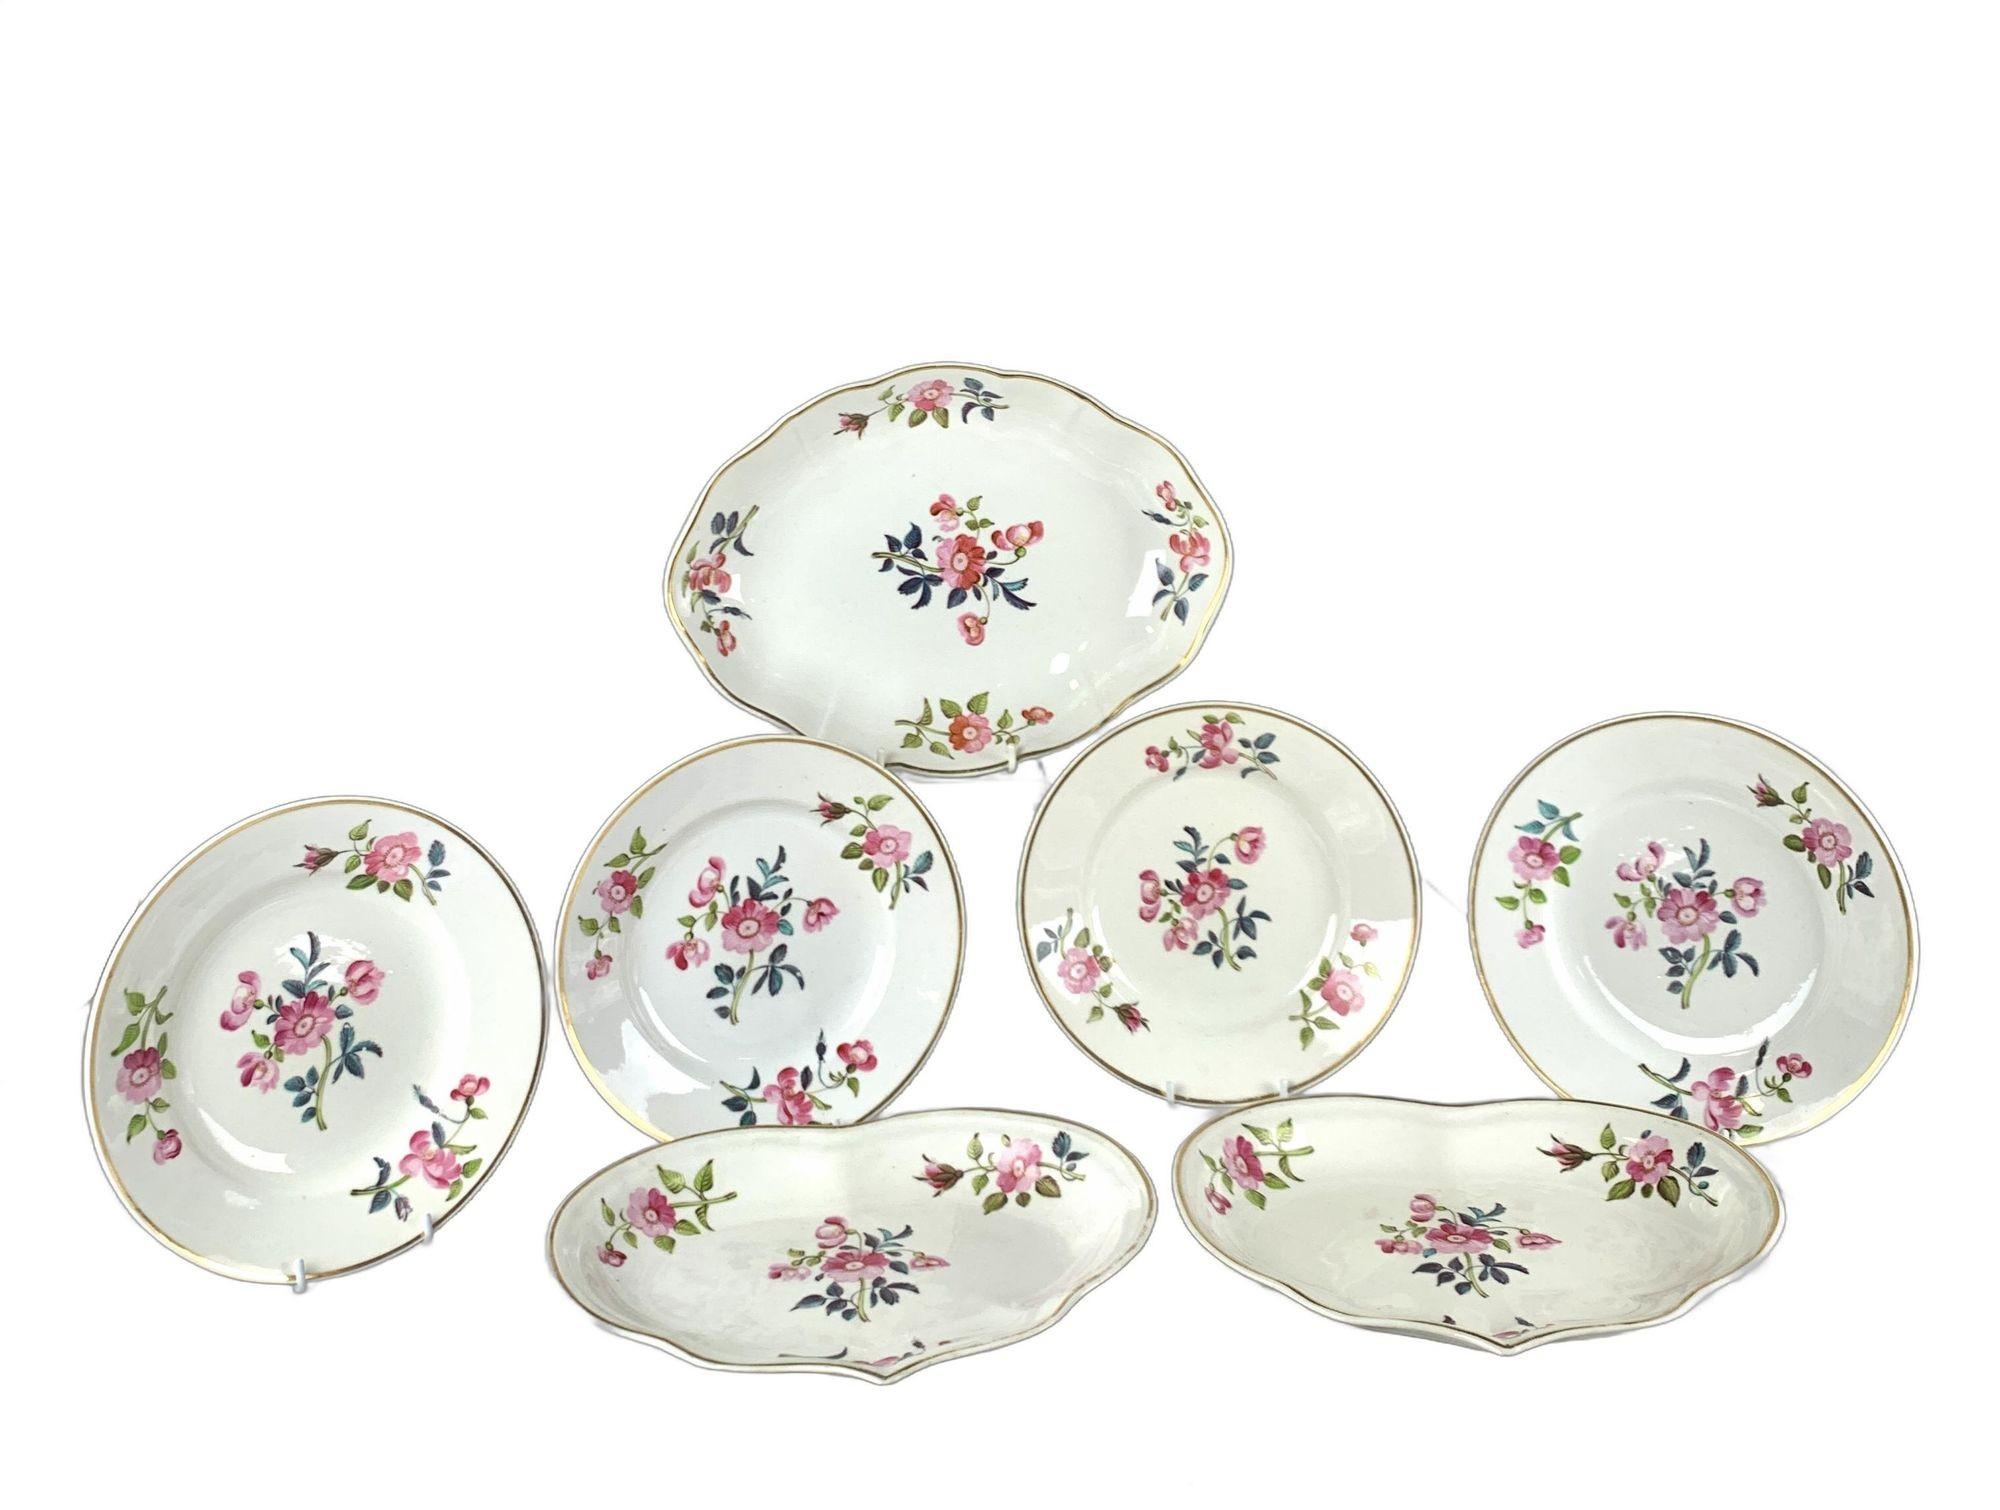 Dieses schöne Geschirr wurde um 1815 in England hergestellt.
Sie haben handgemalte rosa Rosen auf strahlend weißem Derby-Porzellan, ergänzt durch grüne und türkisfarbene Blätter.
Im späten 18. und frühen 19. Jahrhundert war die Blumenmalerei ein